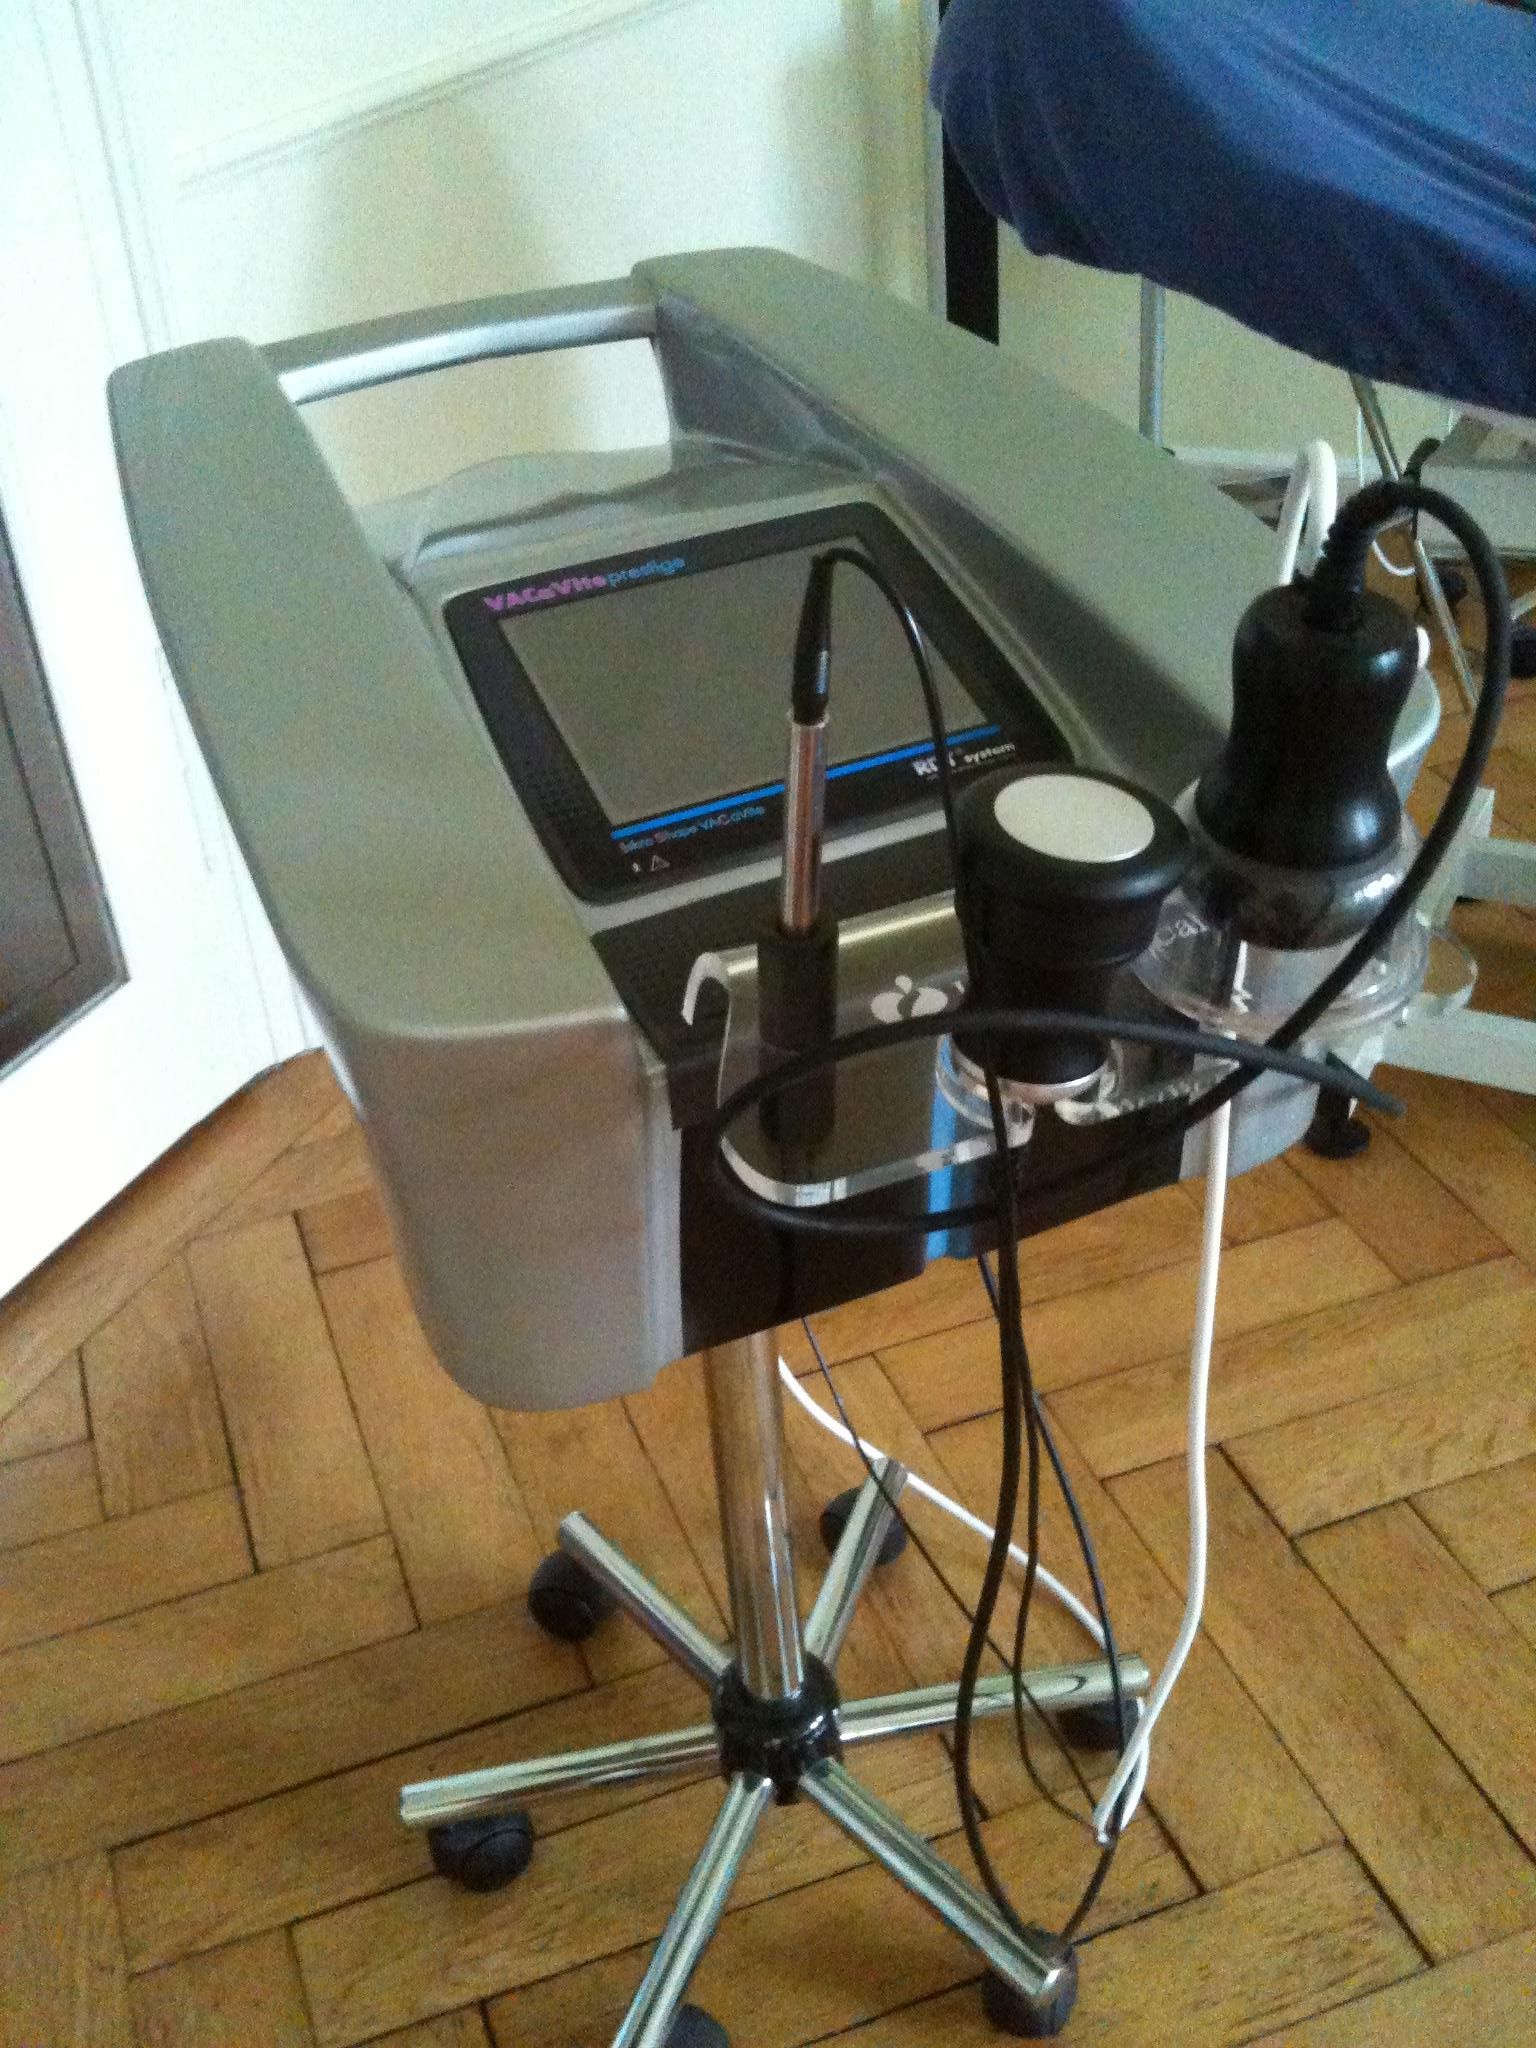 Ultraschallgerät+Lymphdrainagerät Green CaVITE Prestige, Bj. 2010